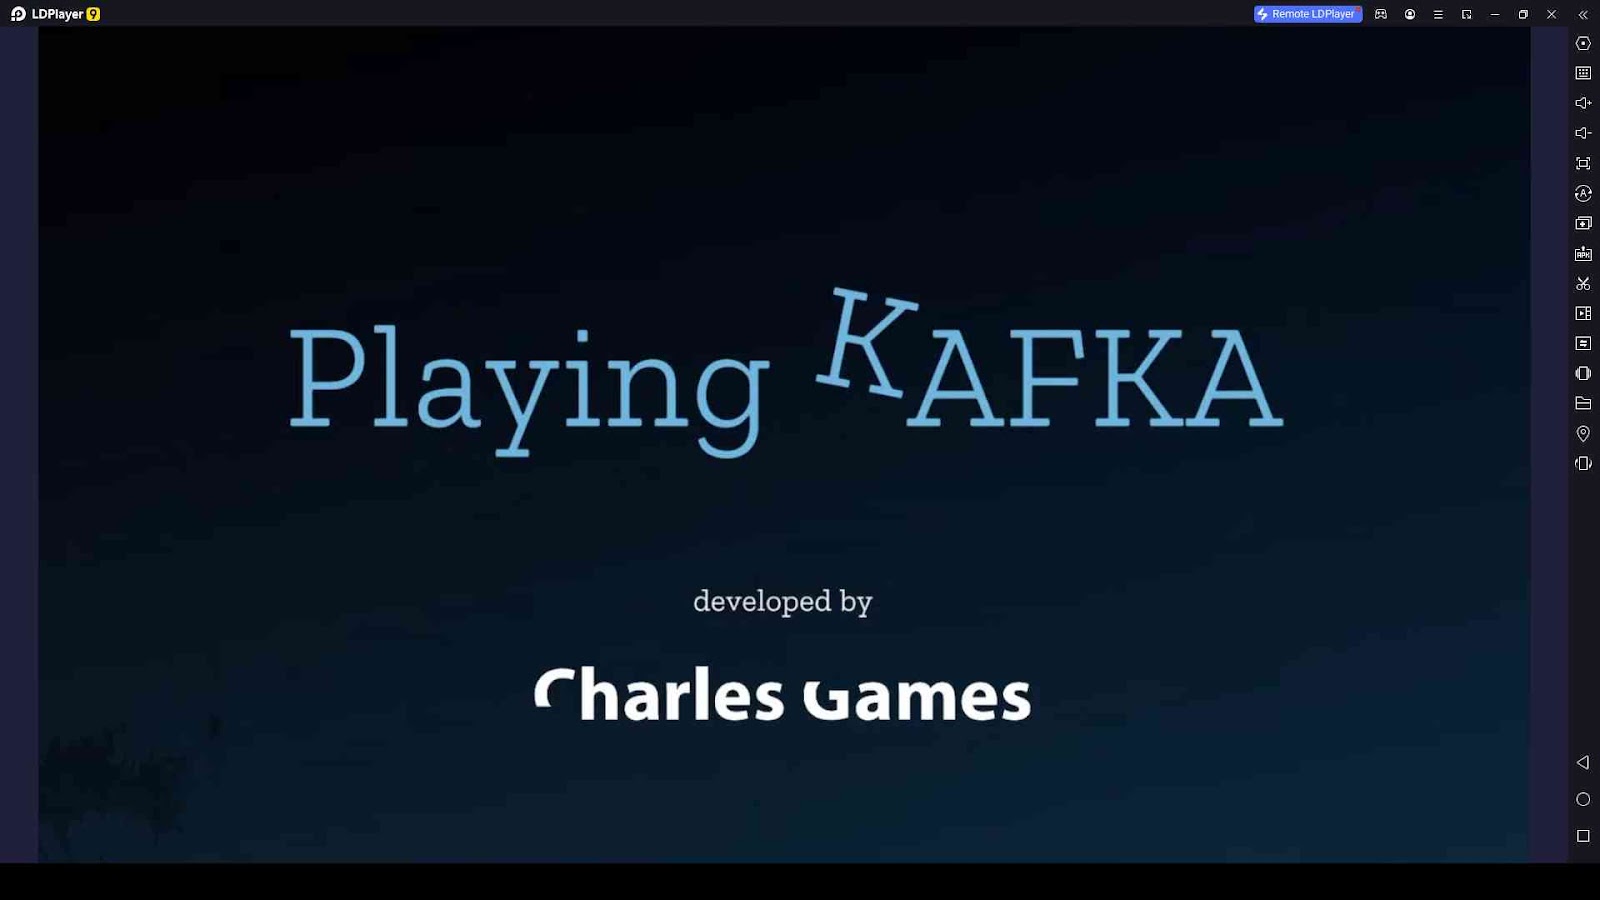 Playing Kafka Codes